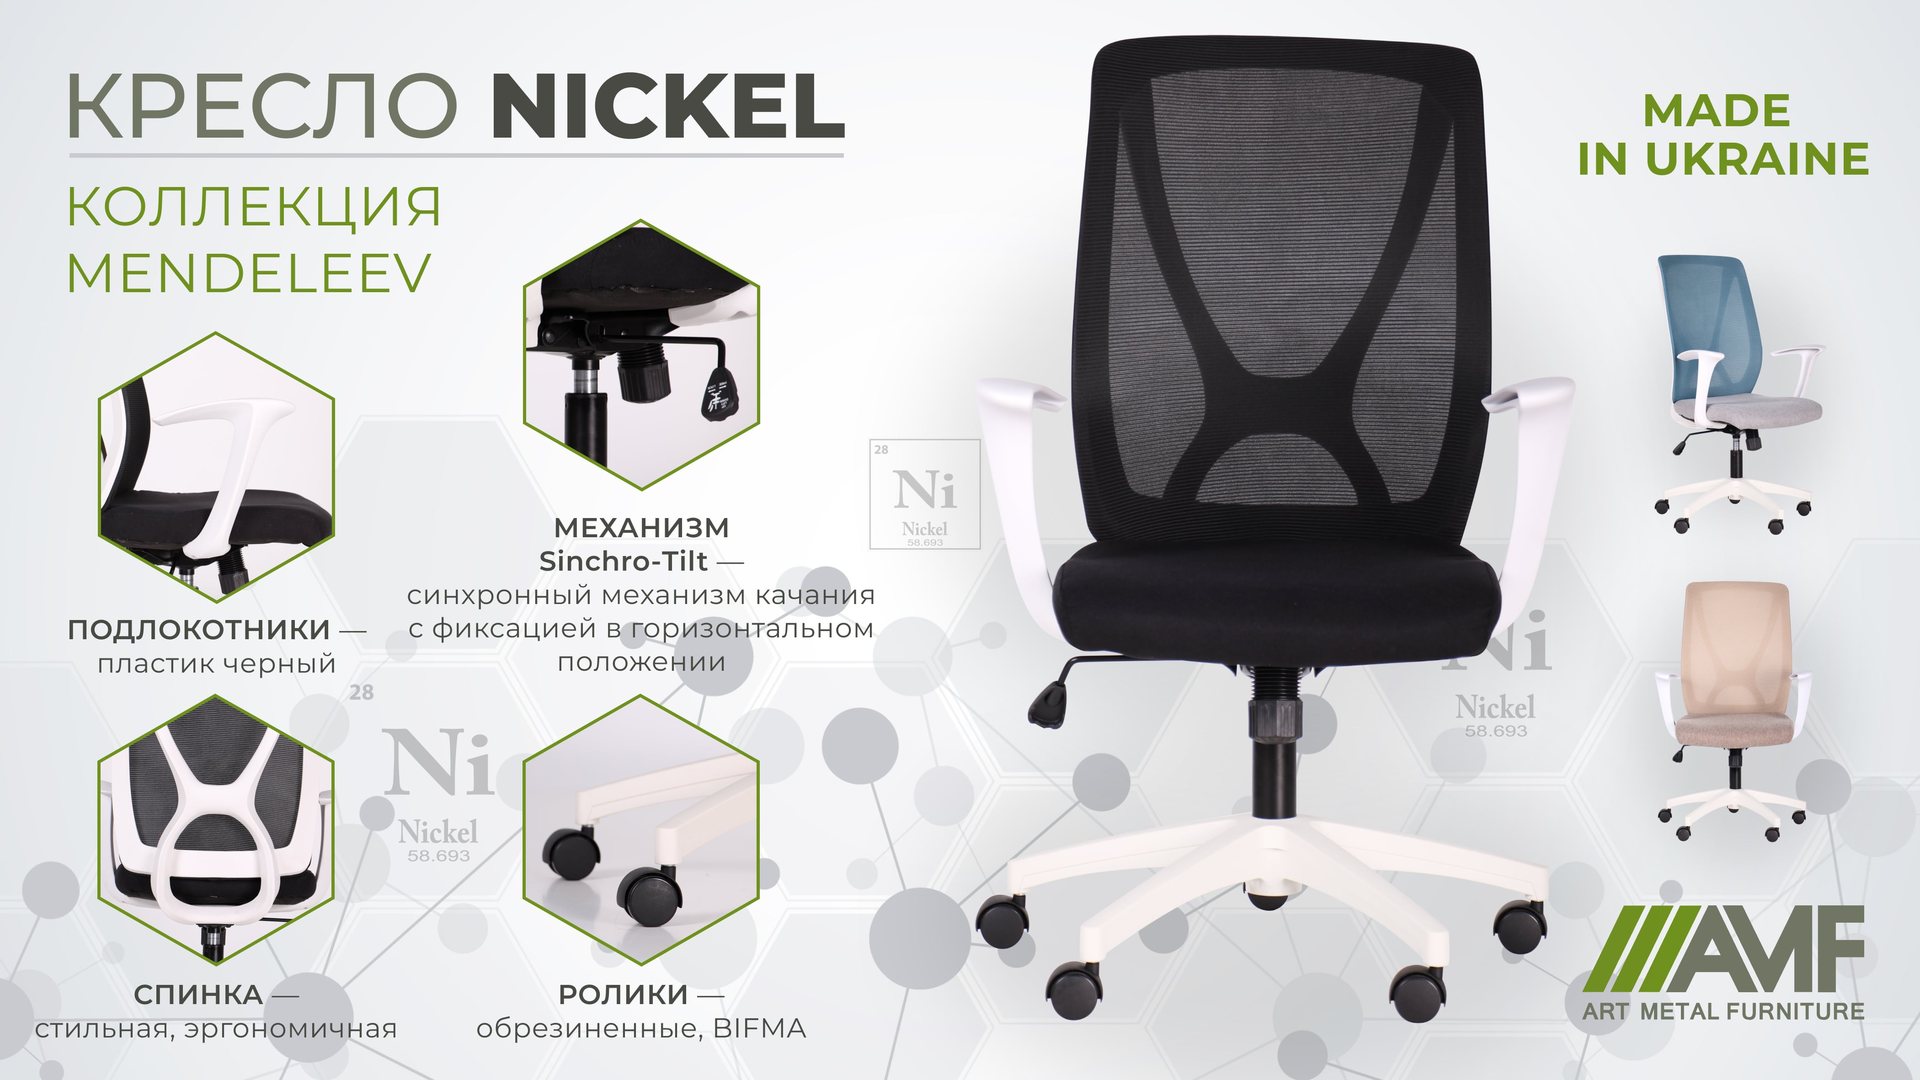 Кресло Nickel White описание